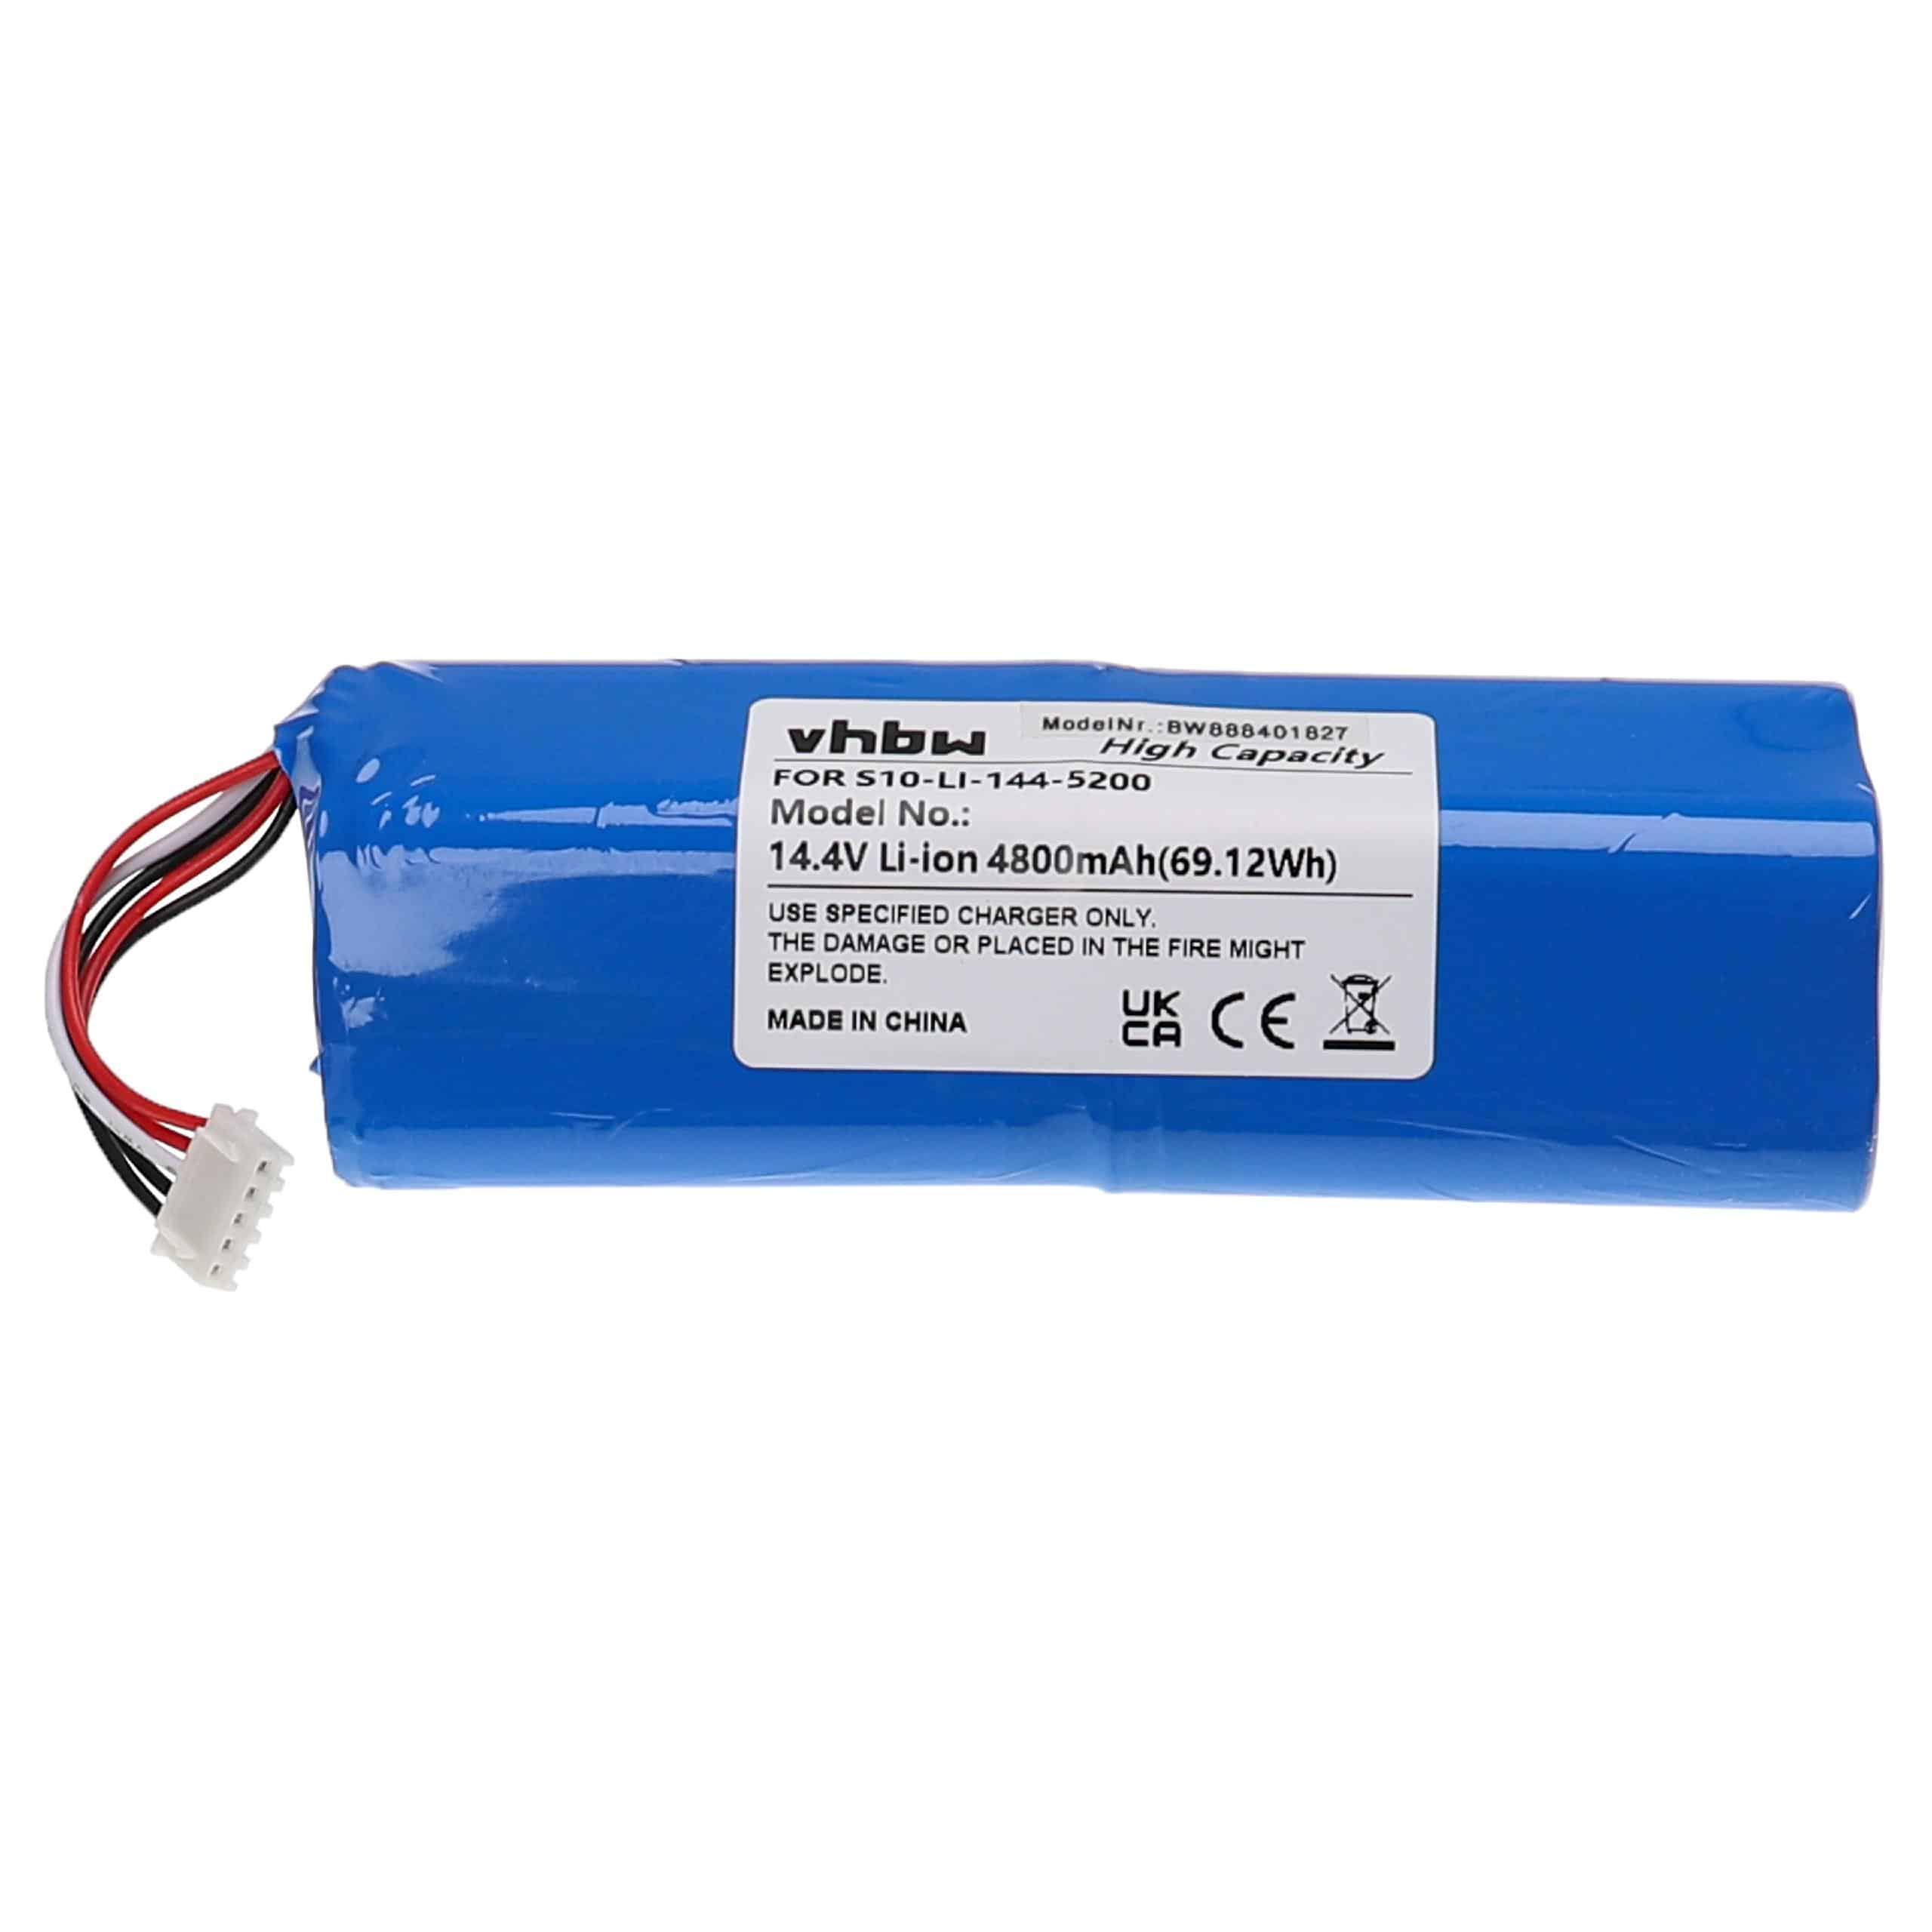 Batterie remplace Ecovacs 201-1913-4200, 201-1913-4201 pour robot aspirateur - 4800mAh 14,4V Li-ion